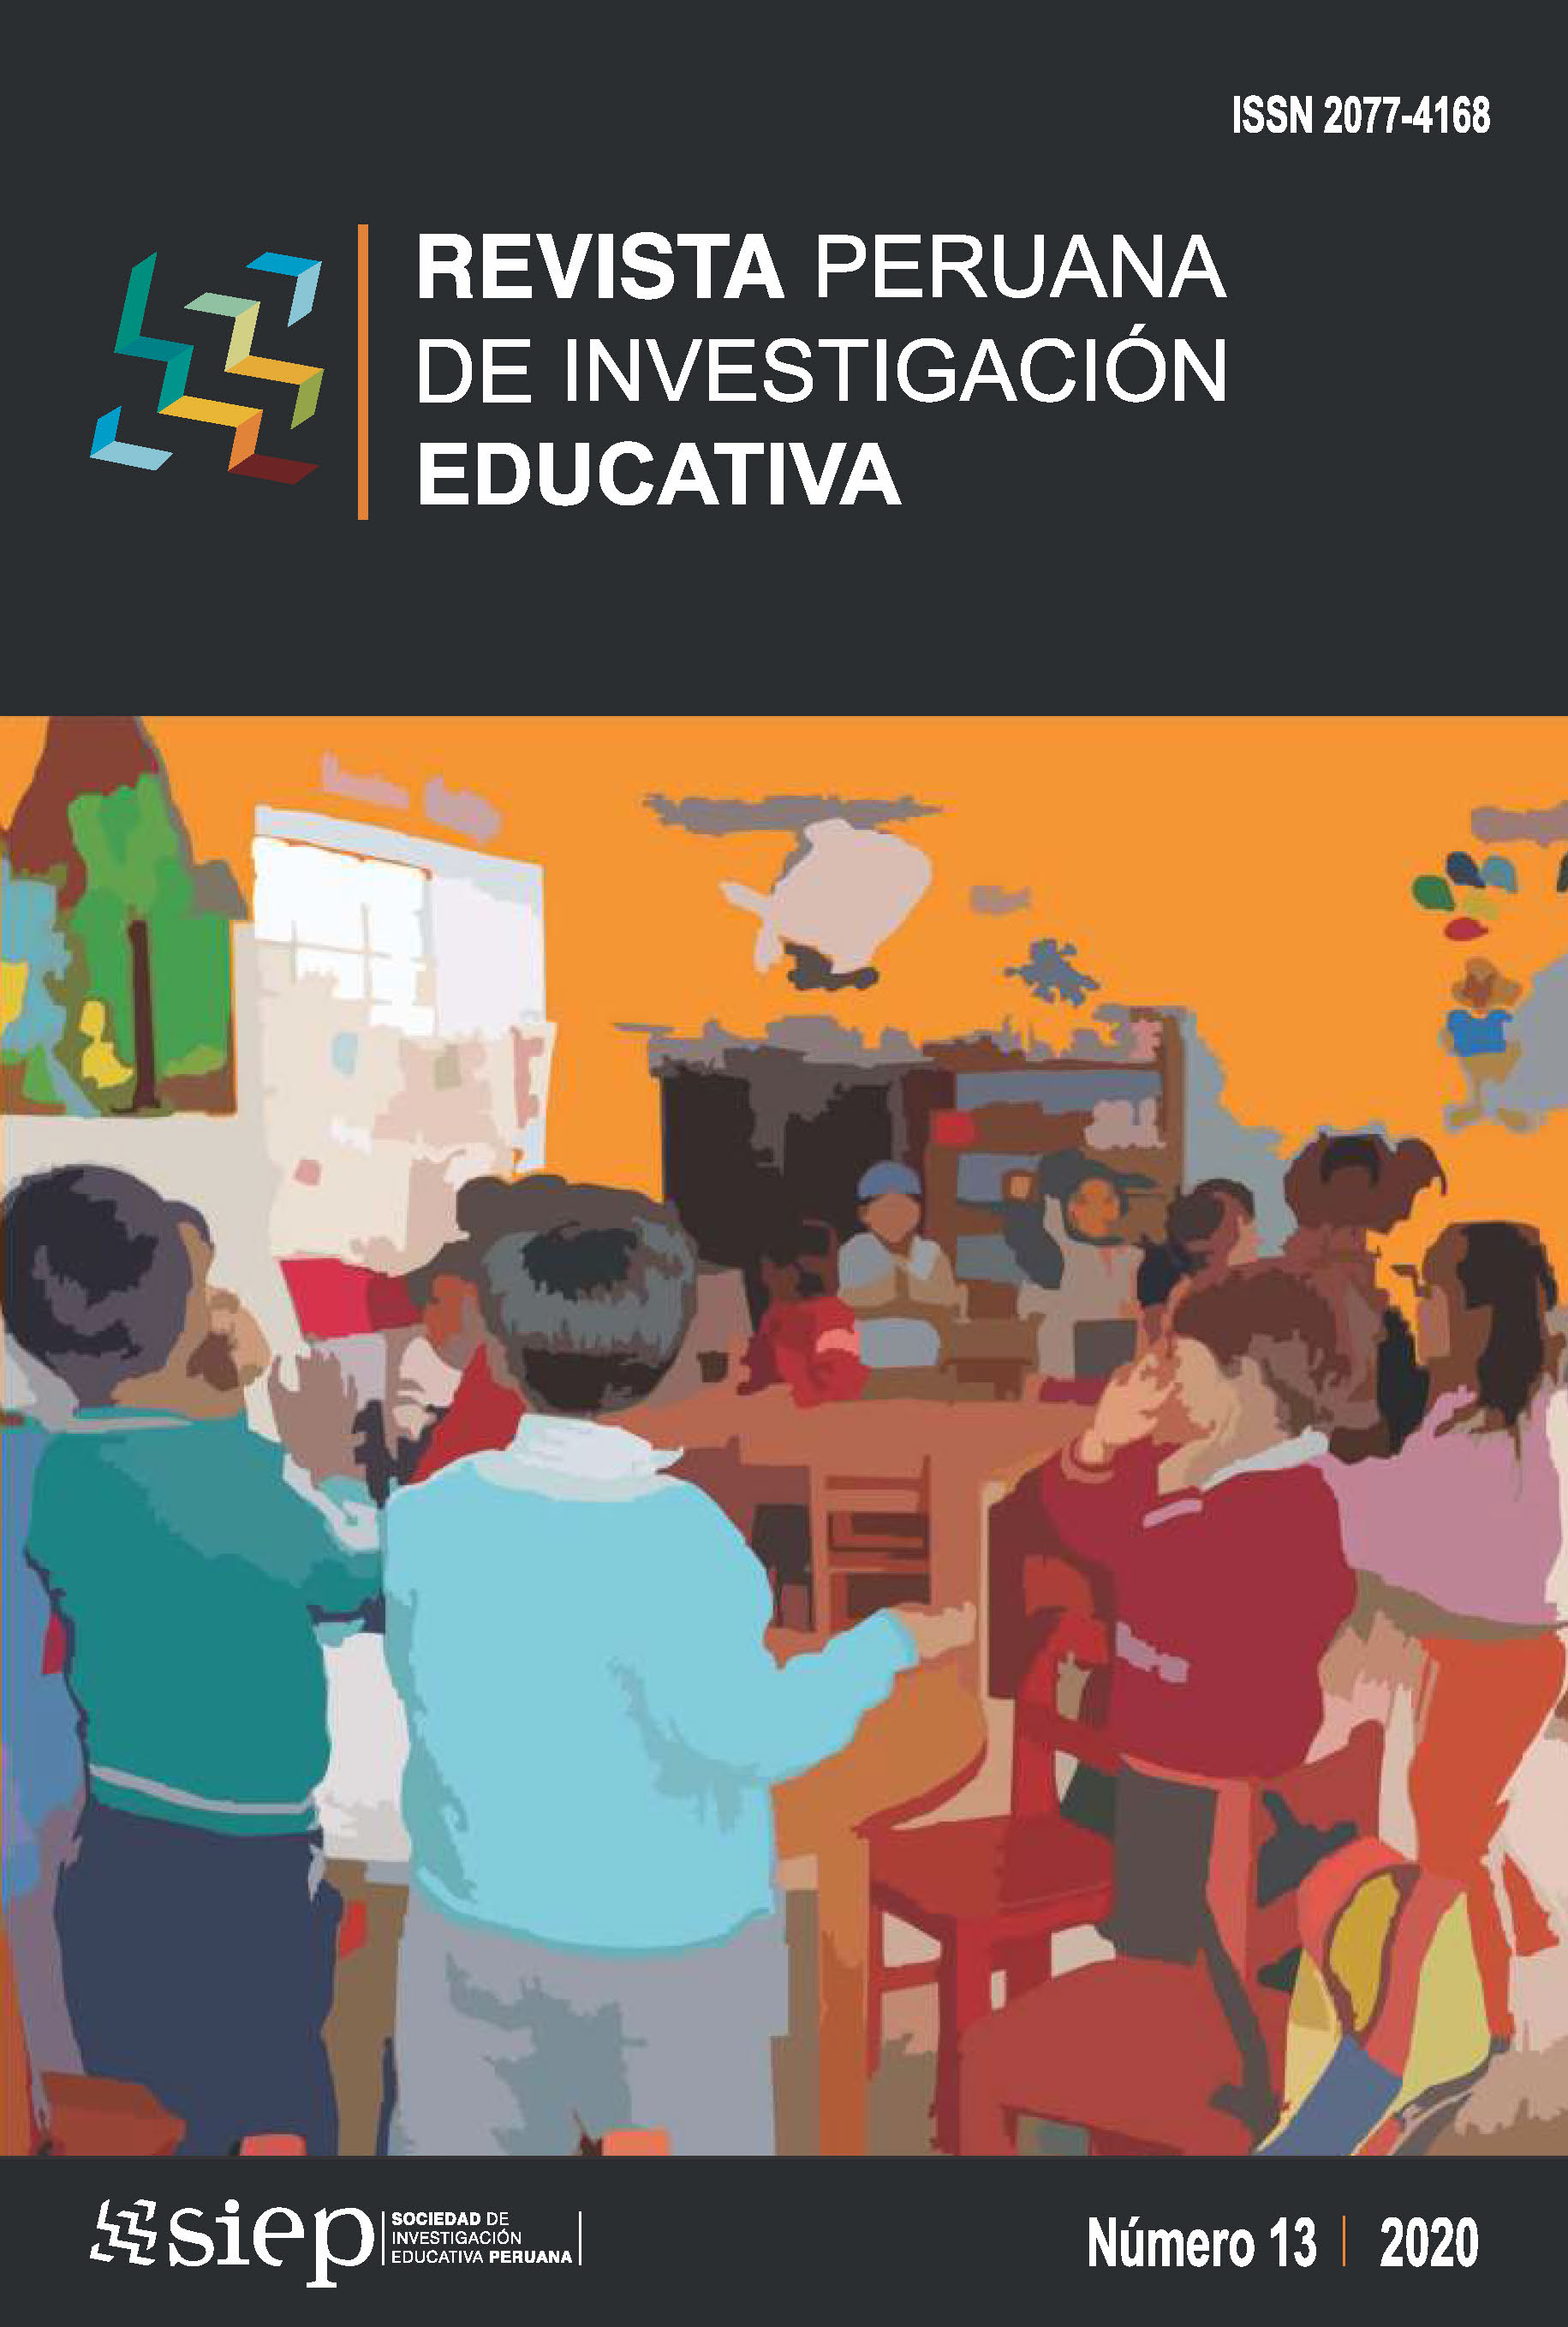 Revista Peruana de Investigación Educativa Vol.12, No13, 2020